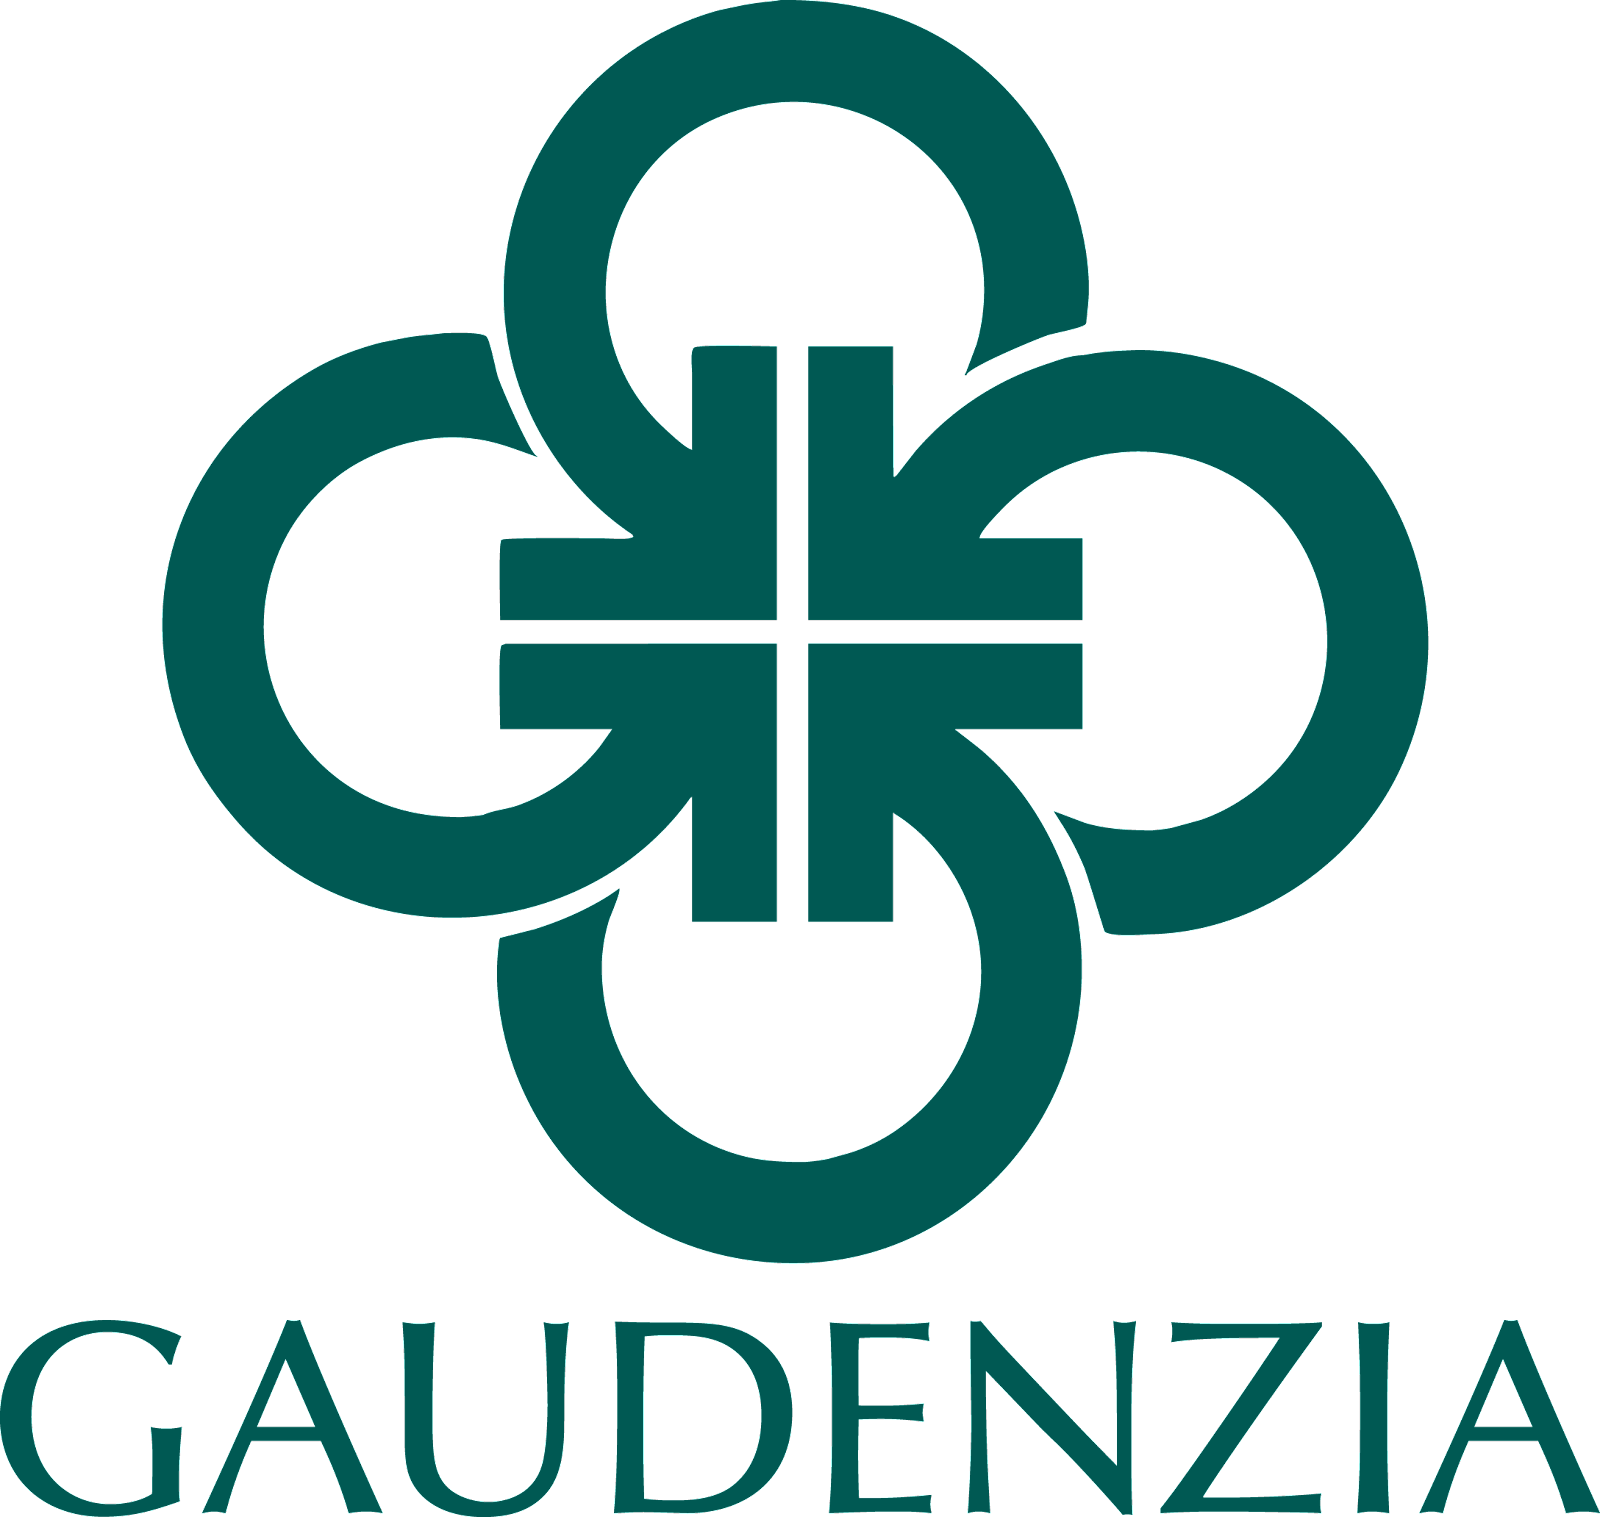 Gaudenzia - Crossroads